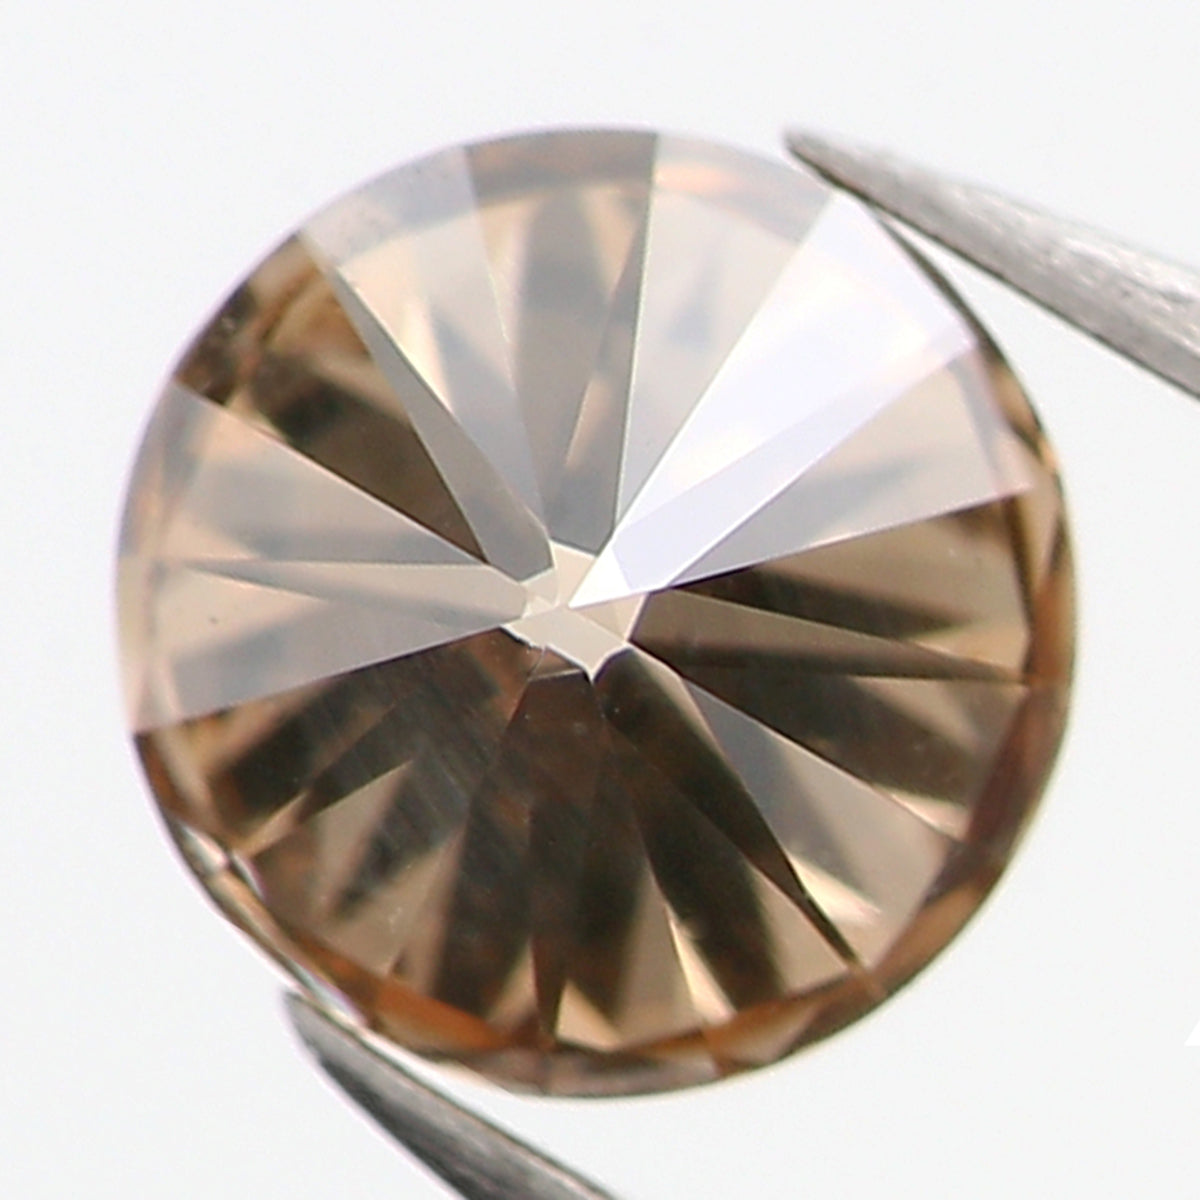 0.32 Ct Natural Loose Diamond, Brown Diamond, Round Diamond, Round Brilliant Cut Diamond, Sparkling Diamond, Rustic Diamond, L839